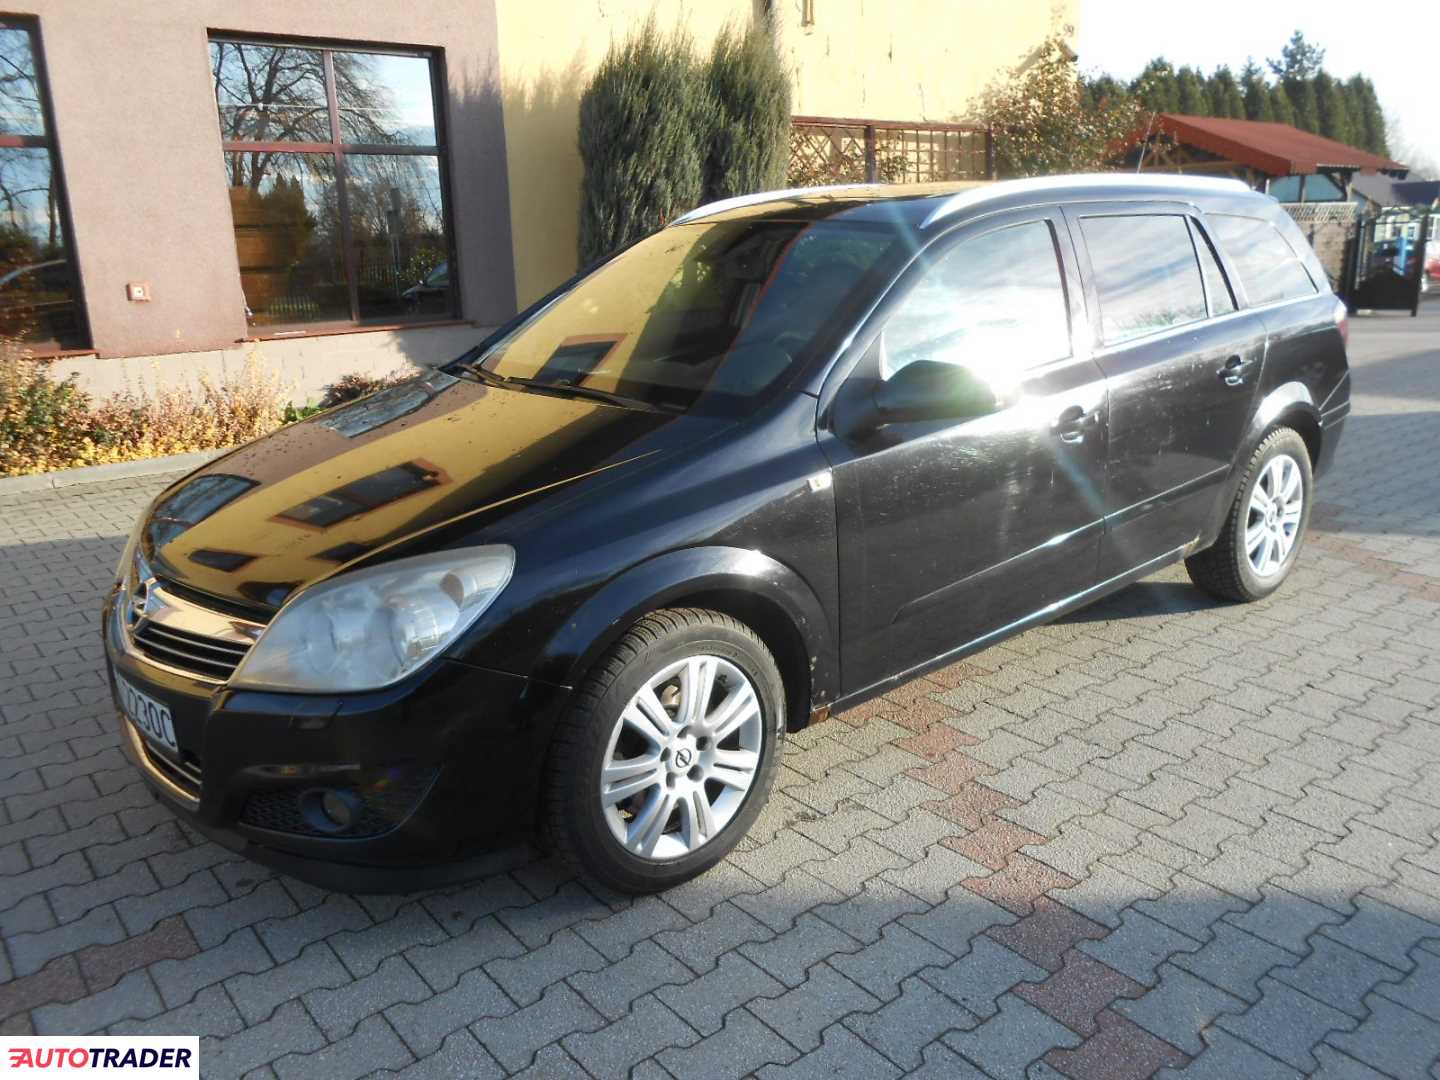 Opel 2007 1.9 150 KM